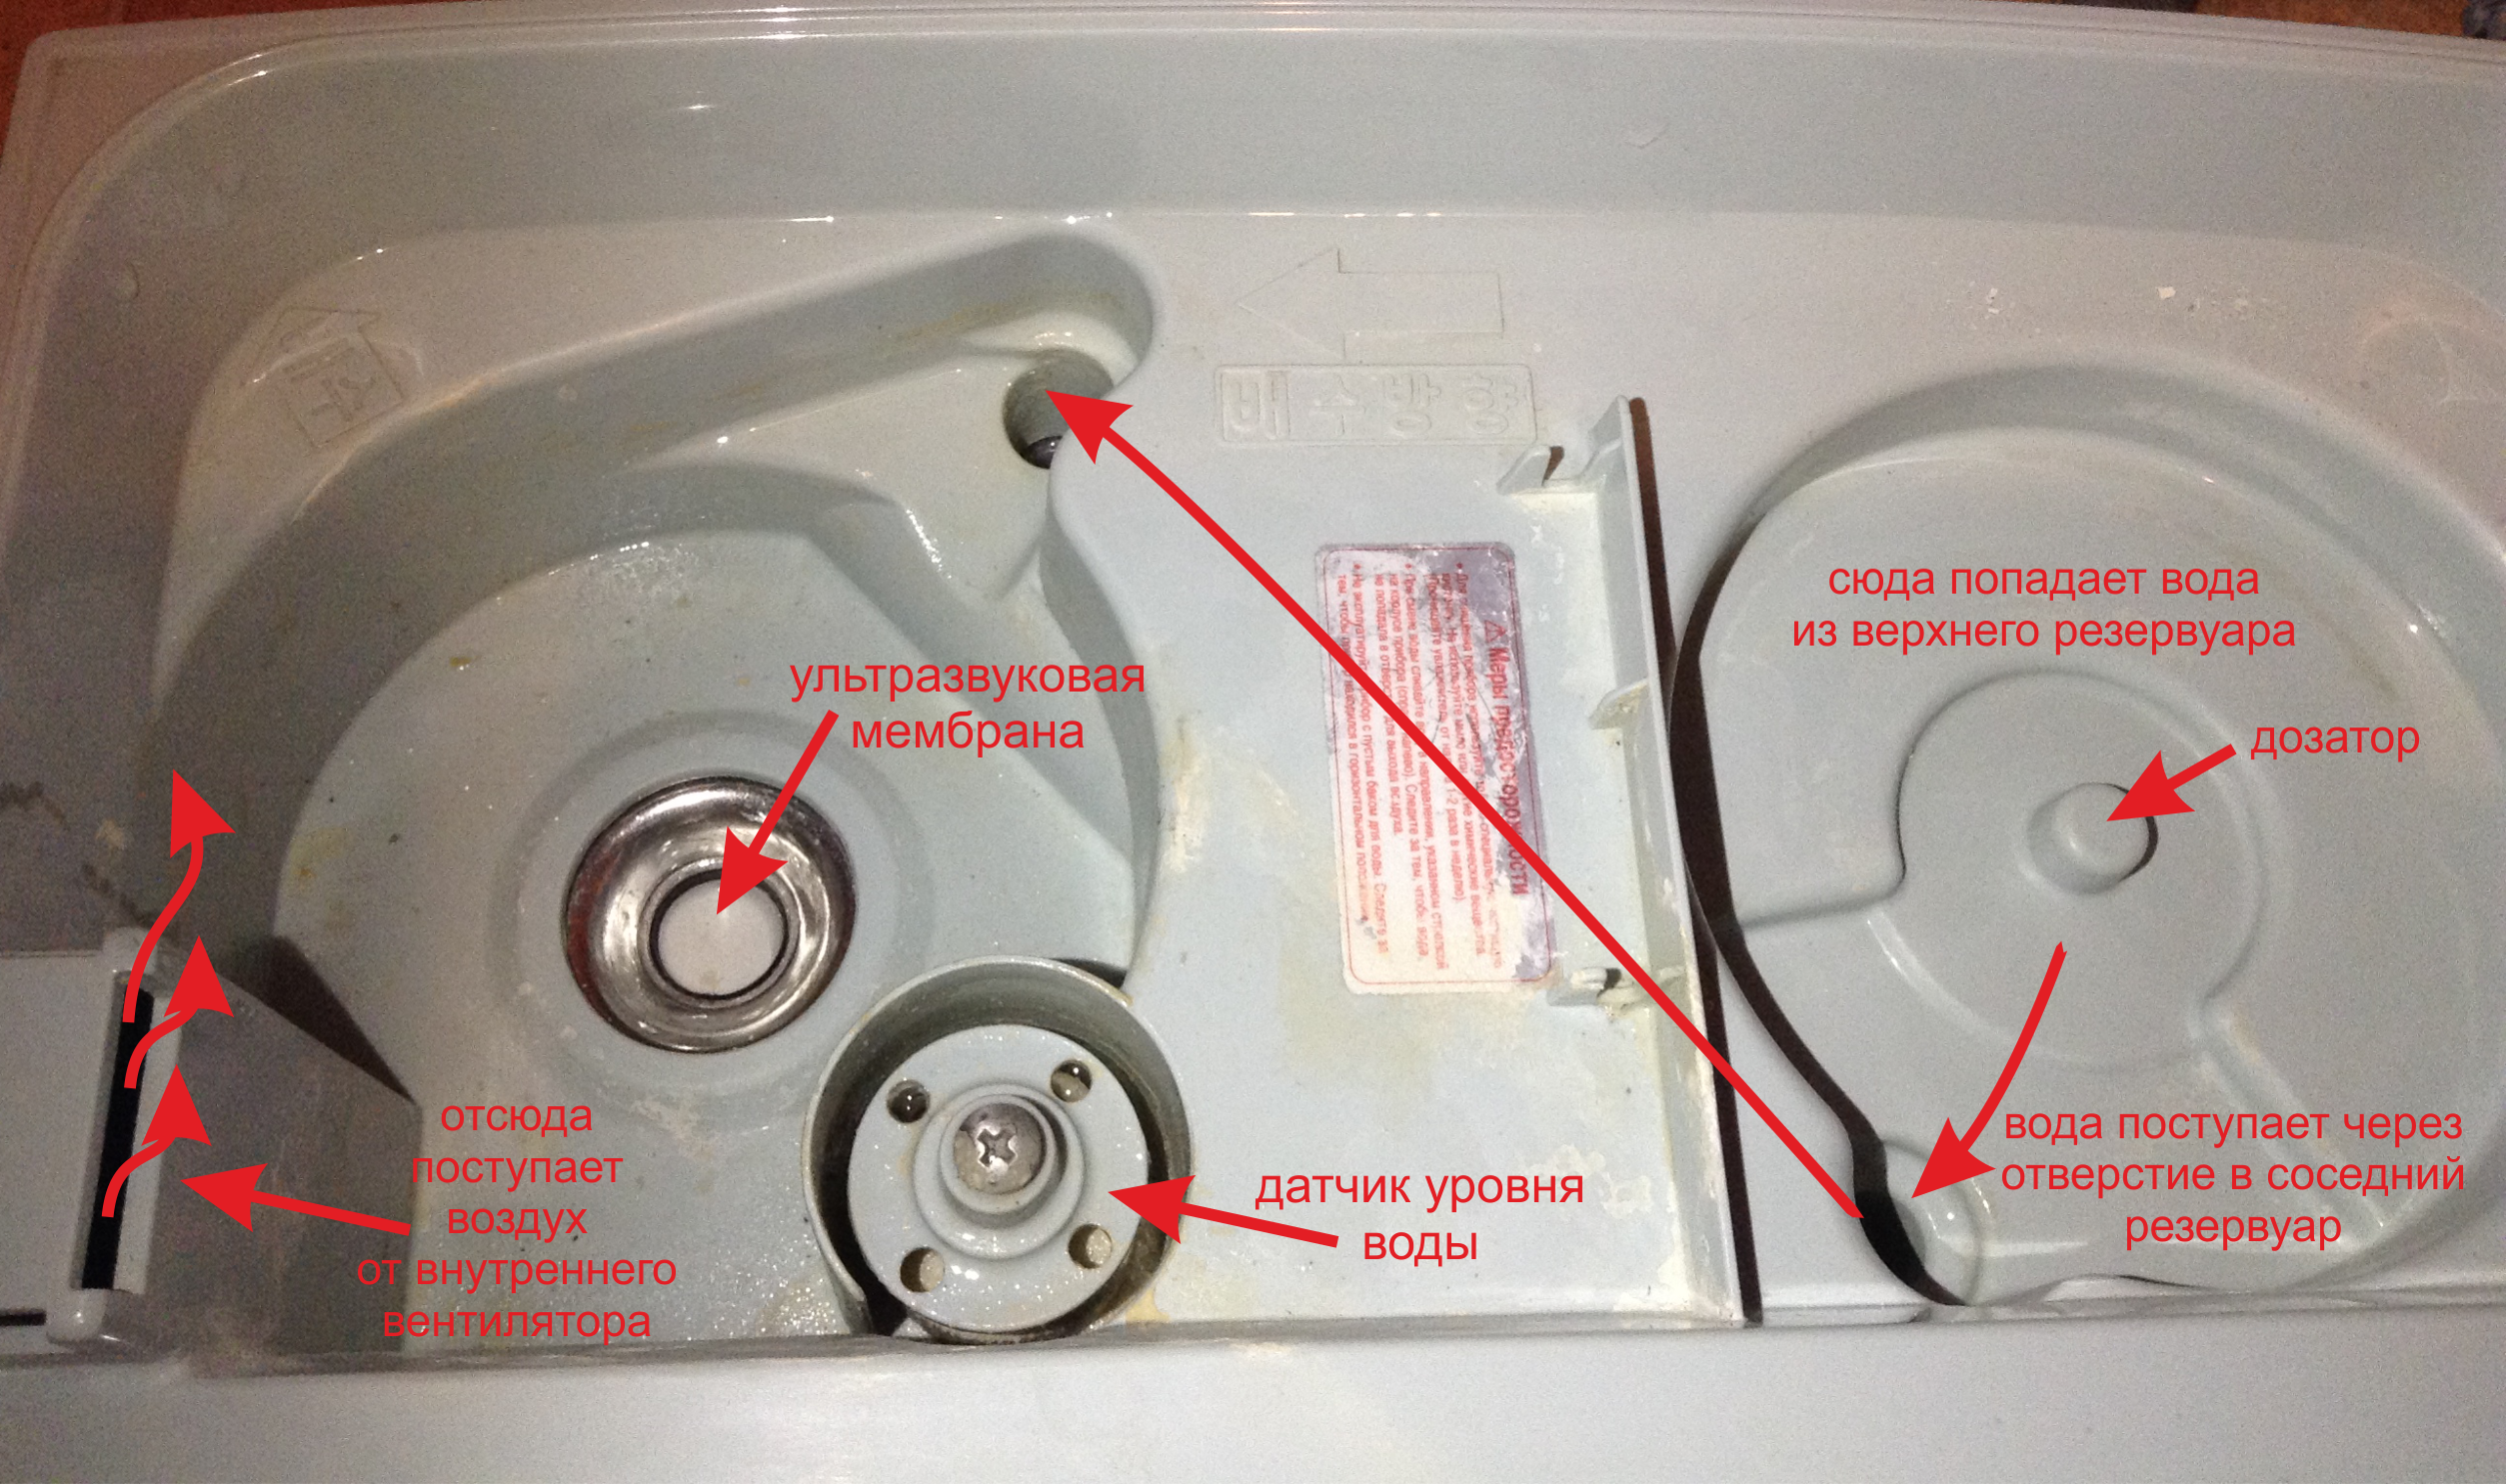 Течет водонагреватель (бойлер) снизу: что делать, если потек бойлер? причины и способы ремонта устройства своими руками по инструкции